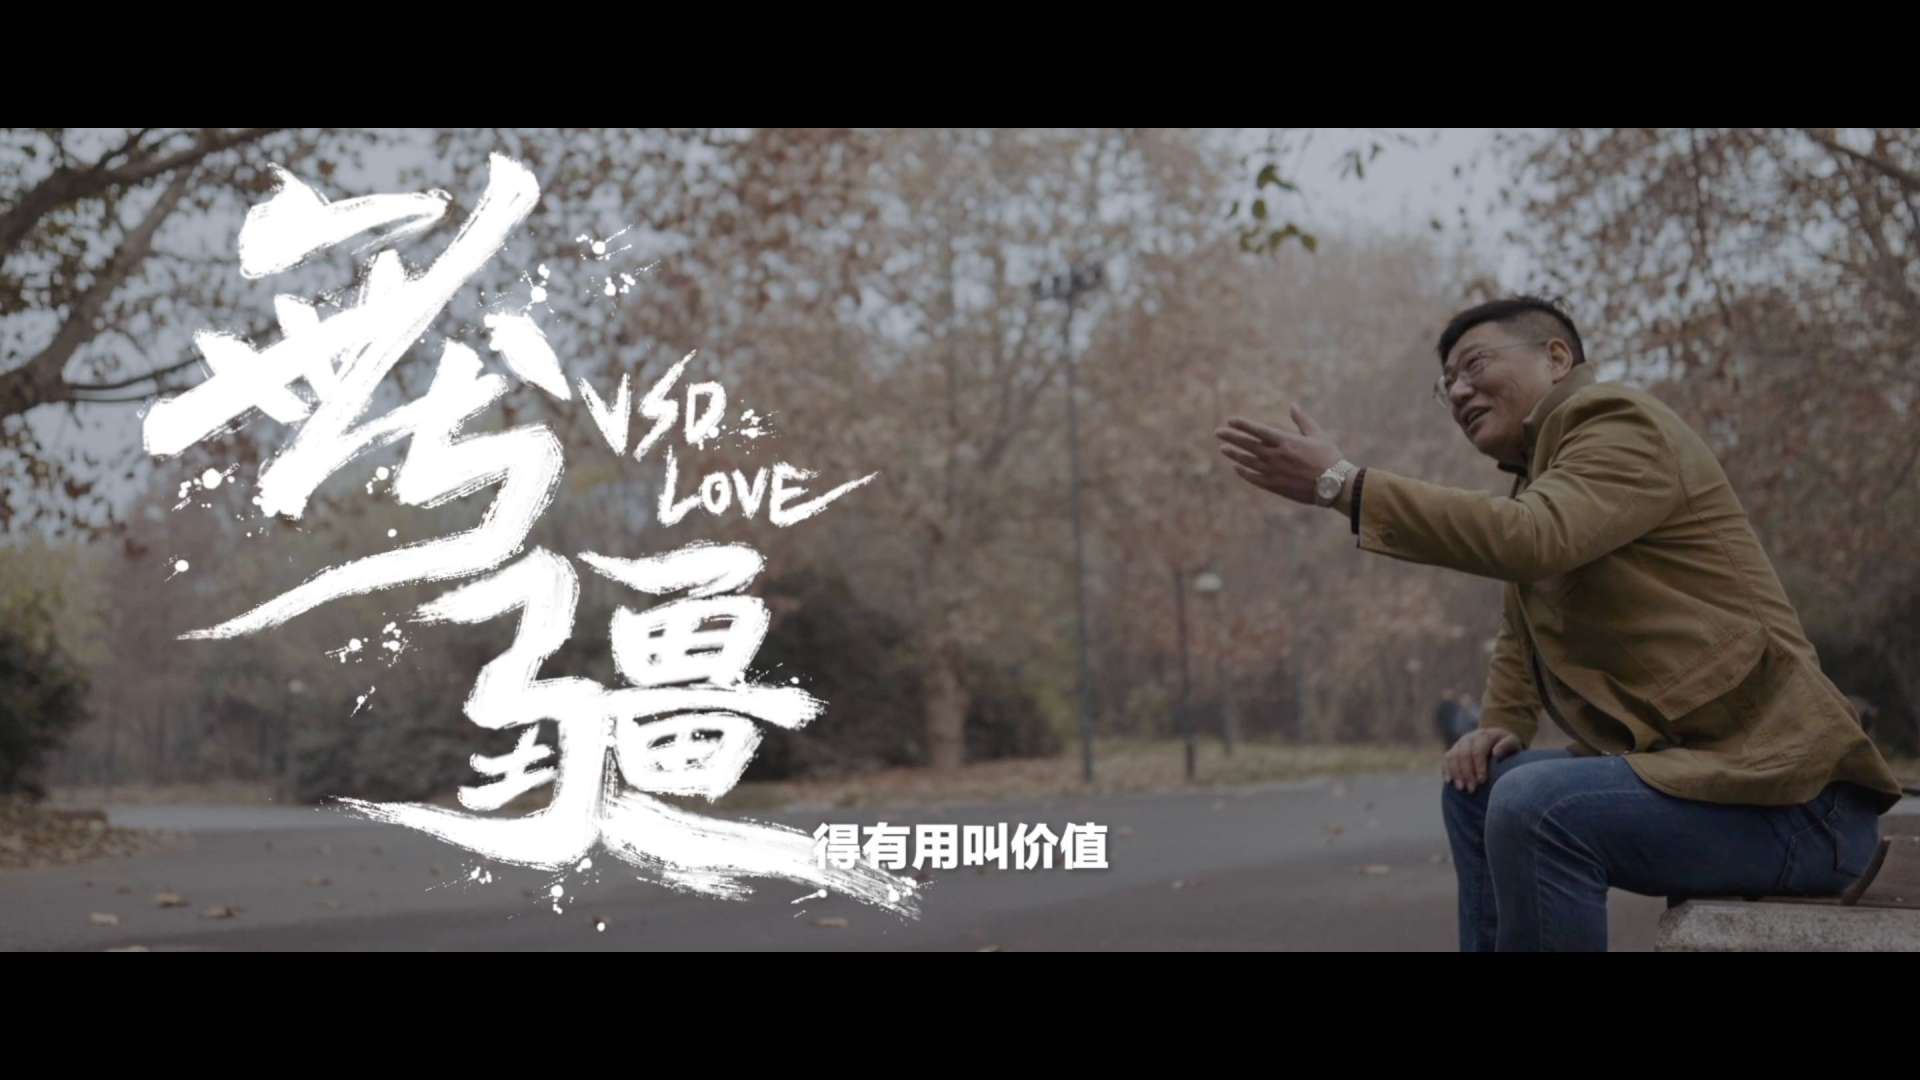 《无疆》VSD Love维斯第医用科技官方纪录片